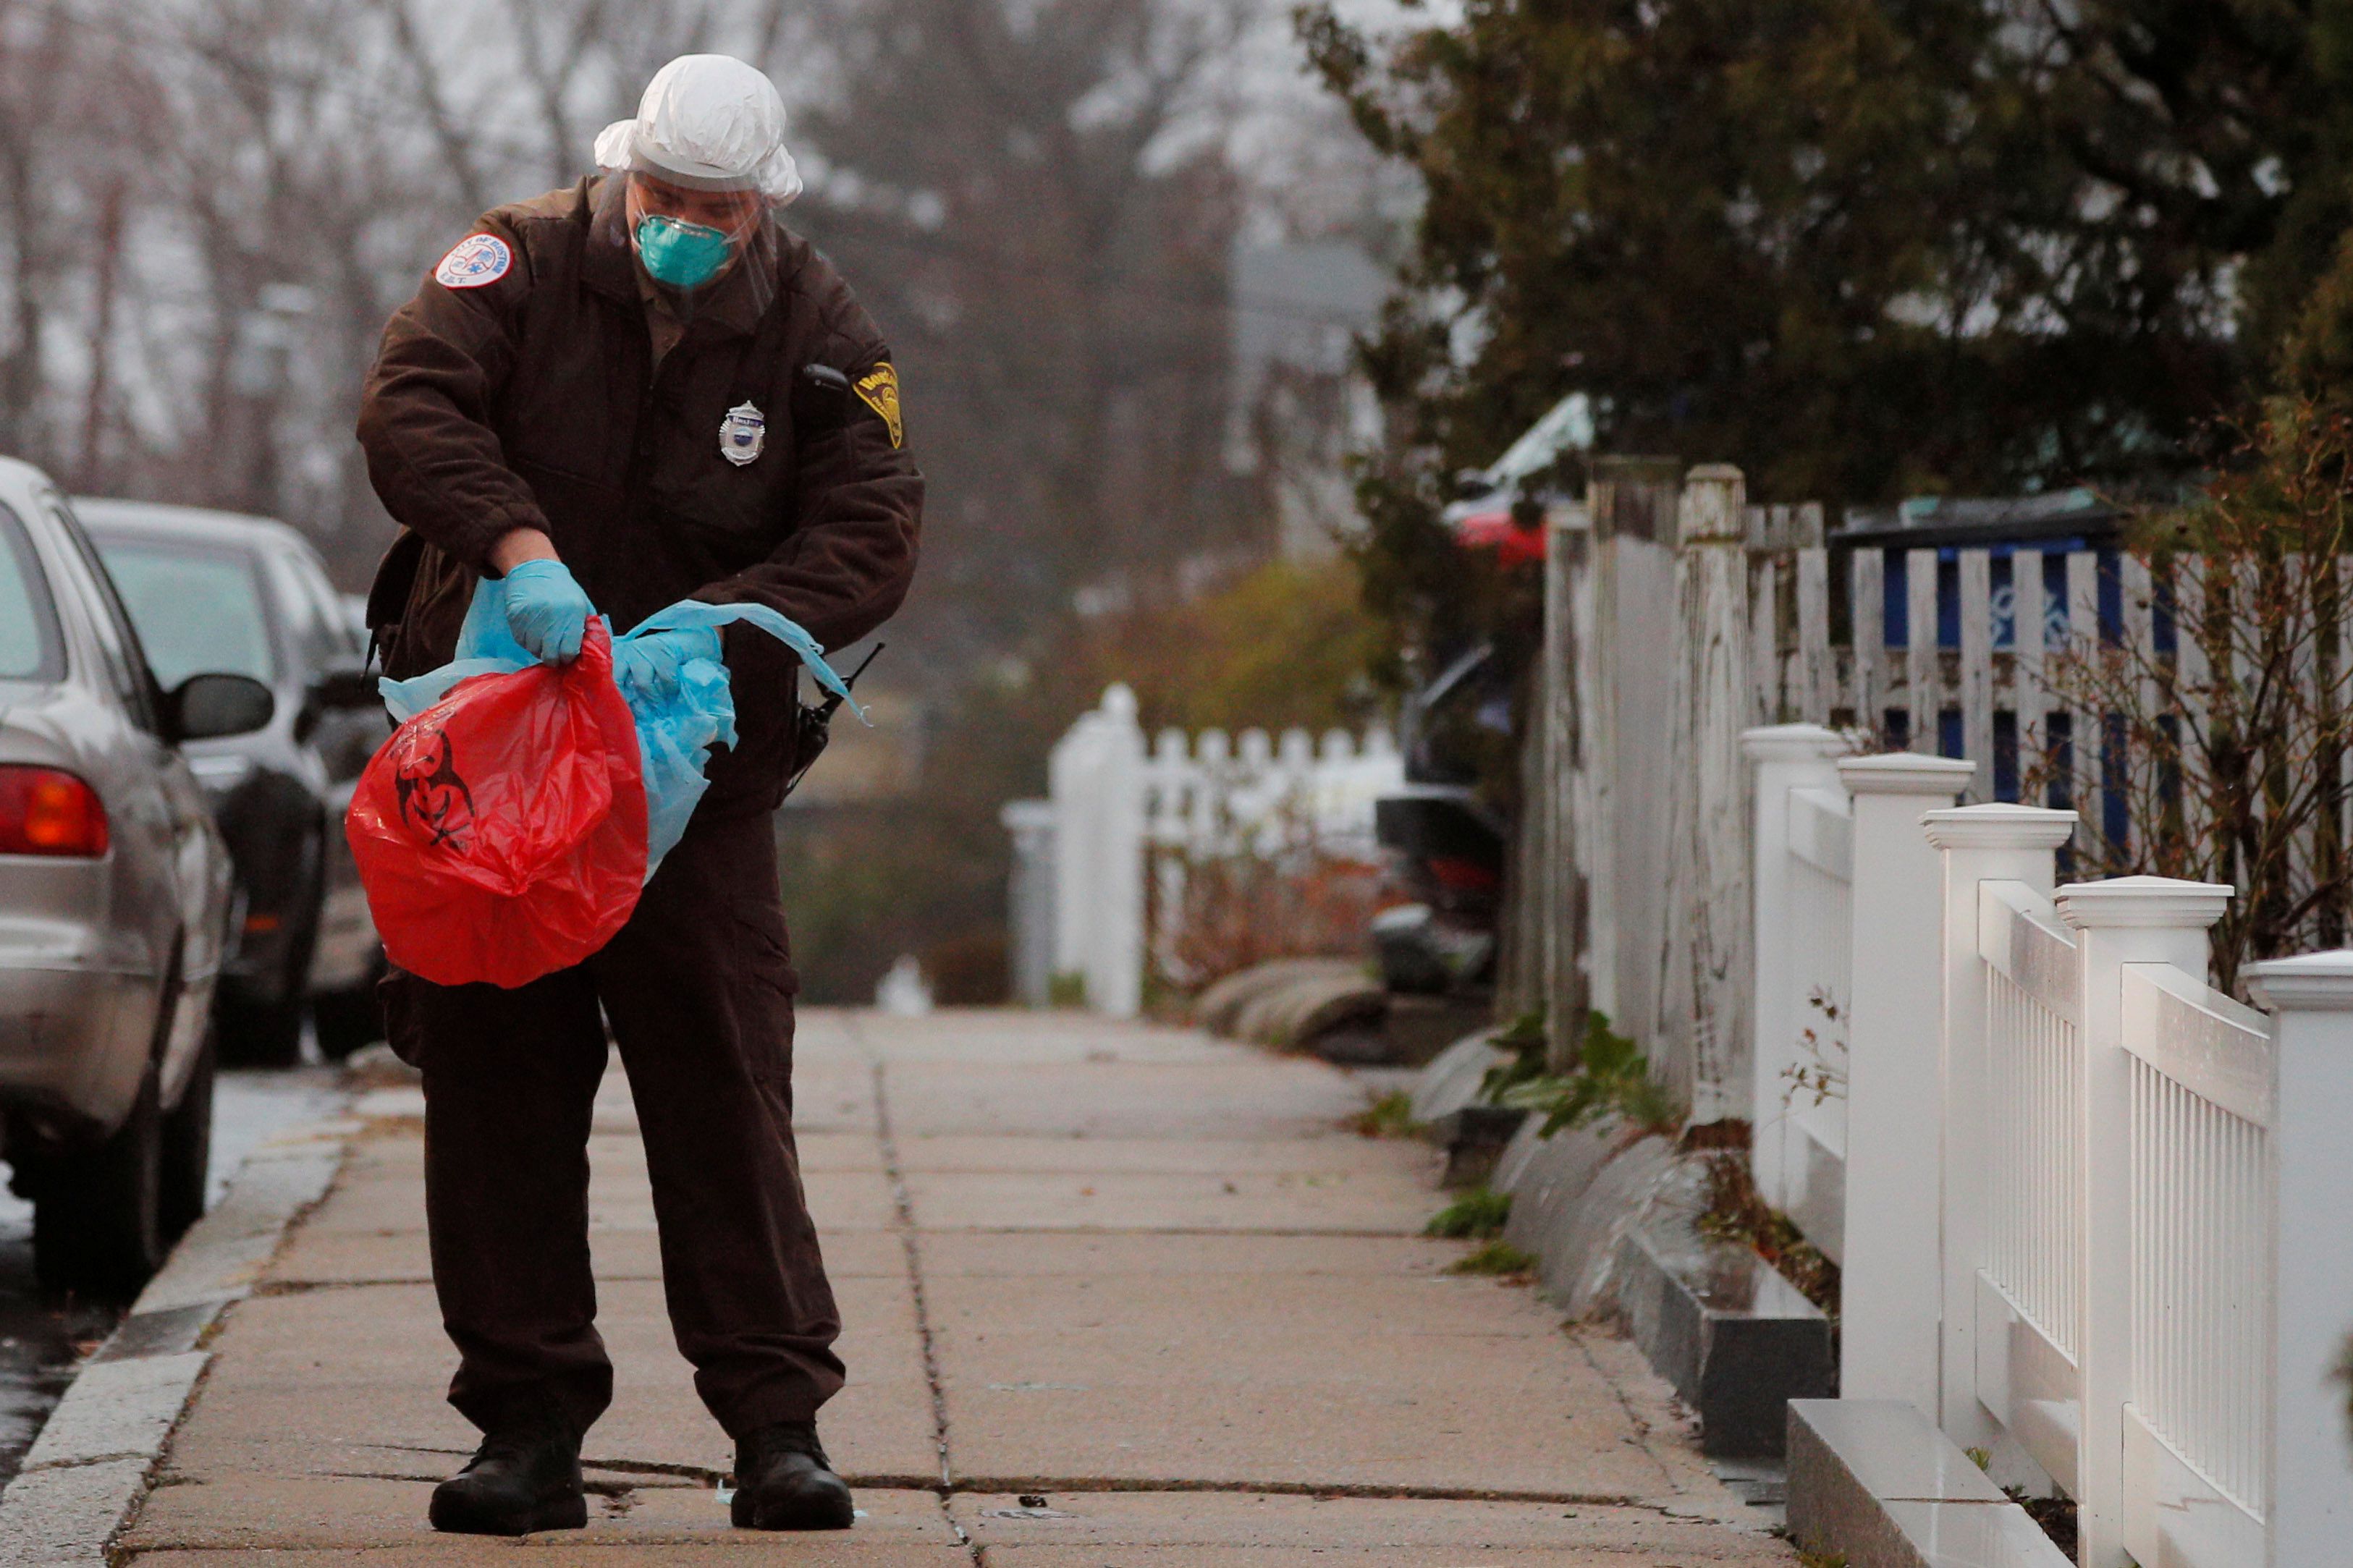 Un paramédico guarda su equipo protector en una bolsa en Boston, Massachusetts (REUTERS/Brian Snyder)